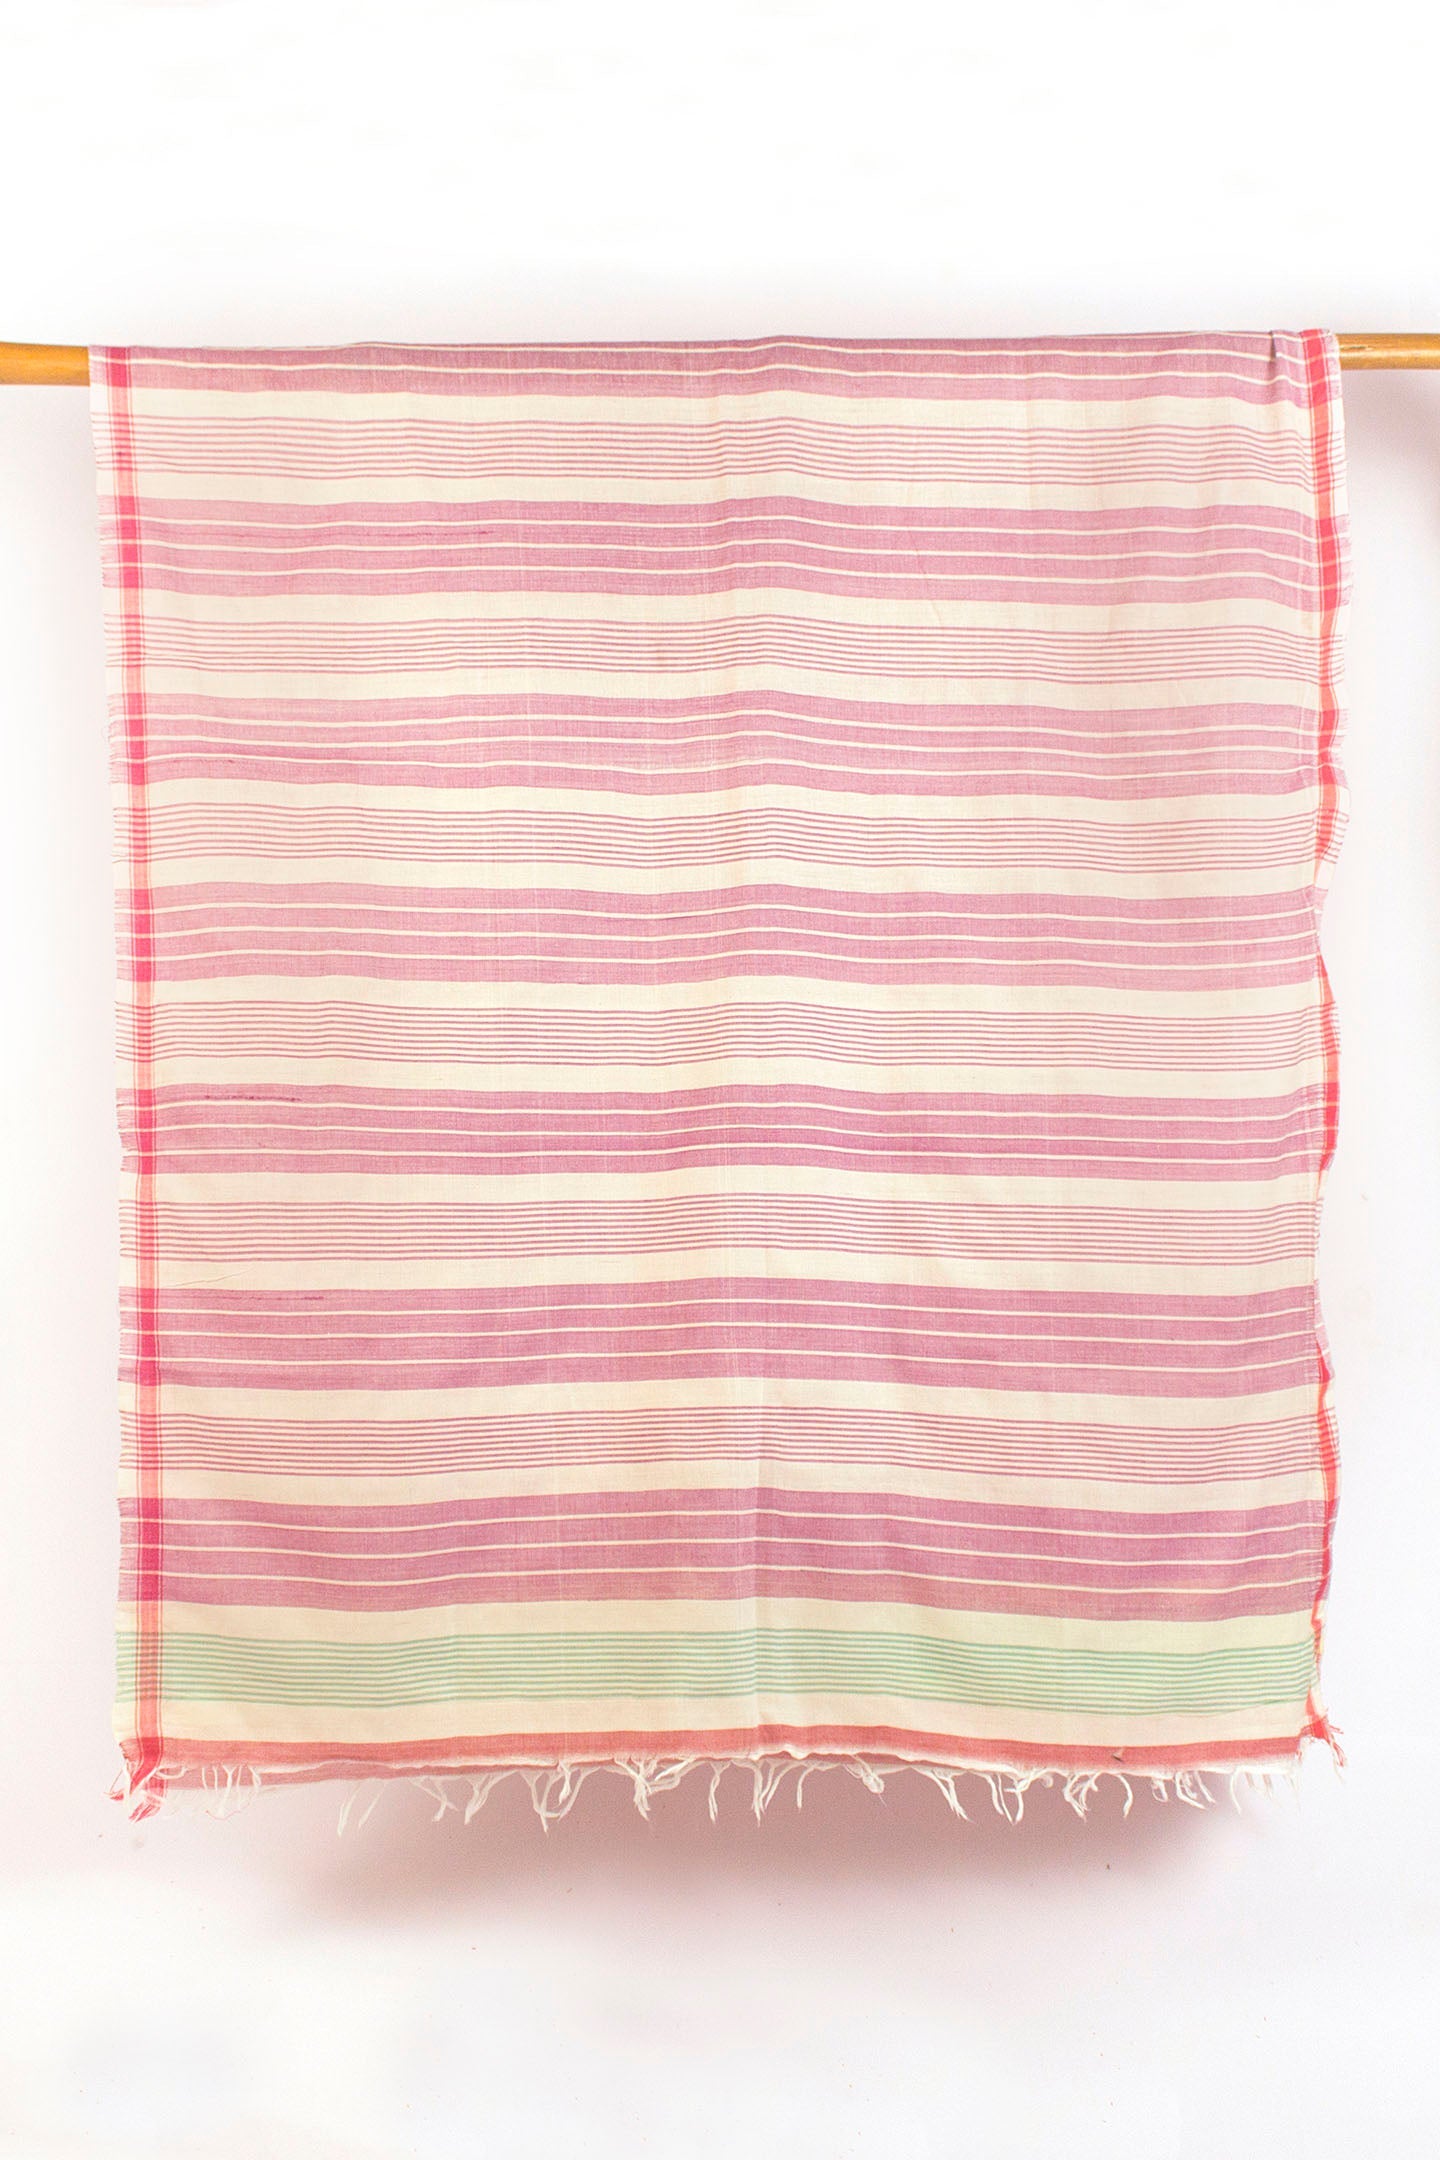 कॉटन गामुसा तौलिया पोमेलो (ऑर्डर करने के लिए बनाया गया)